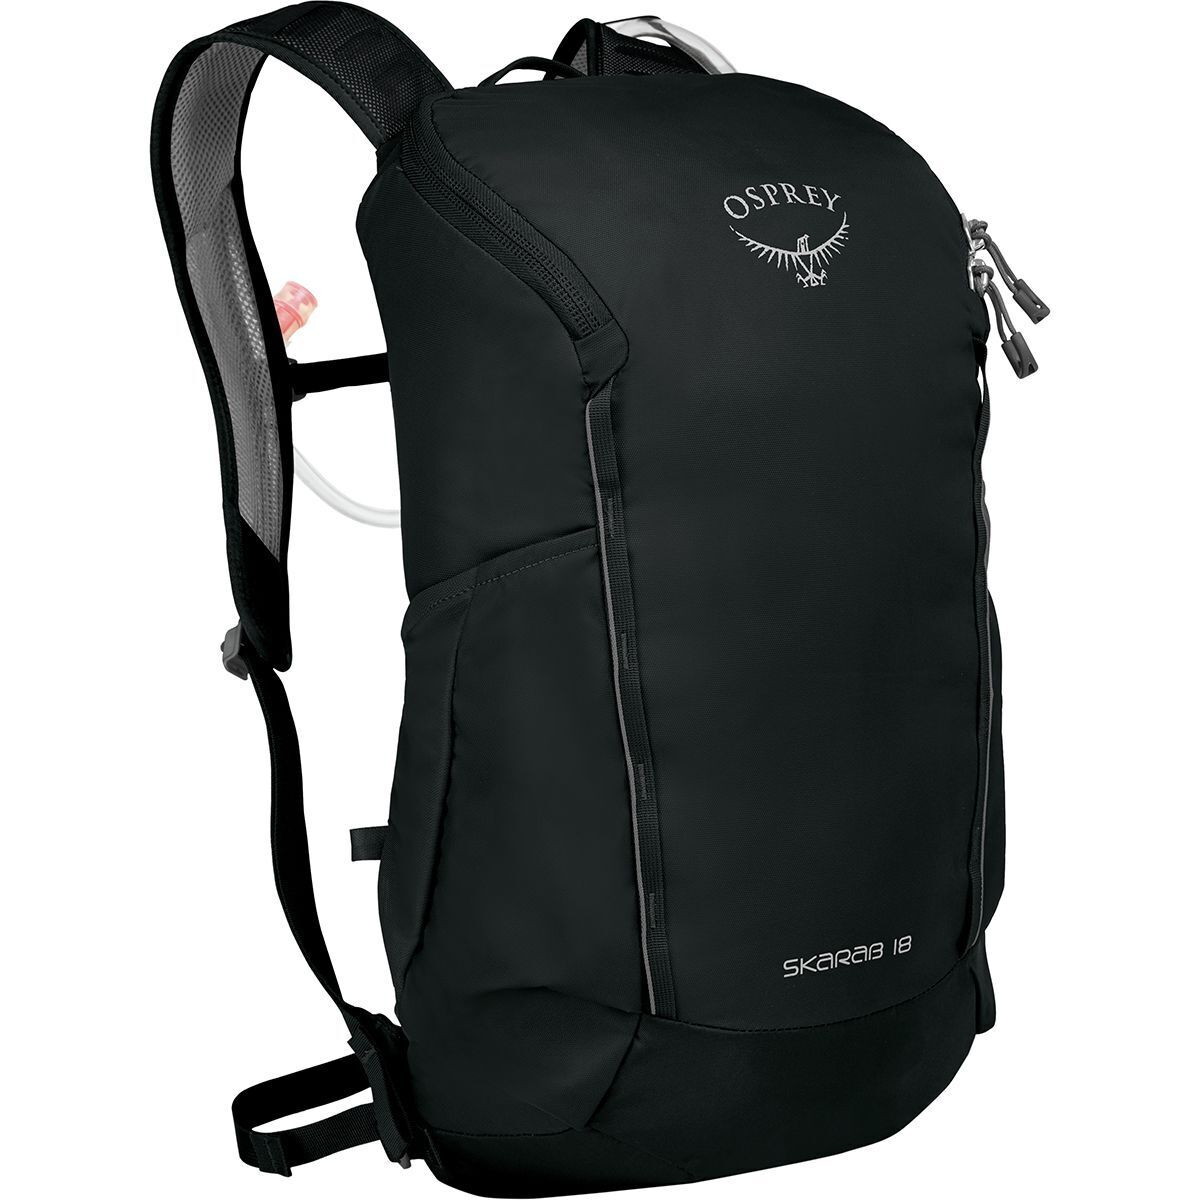 Osprey Packs Skarab 18L Backpack Black, One Size